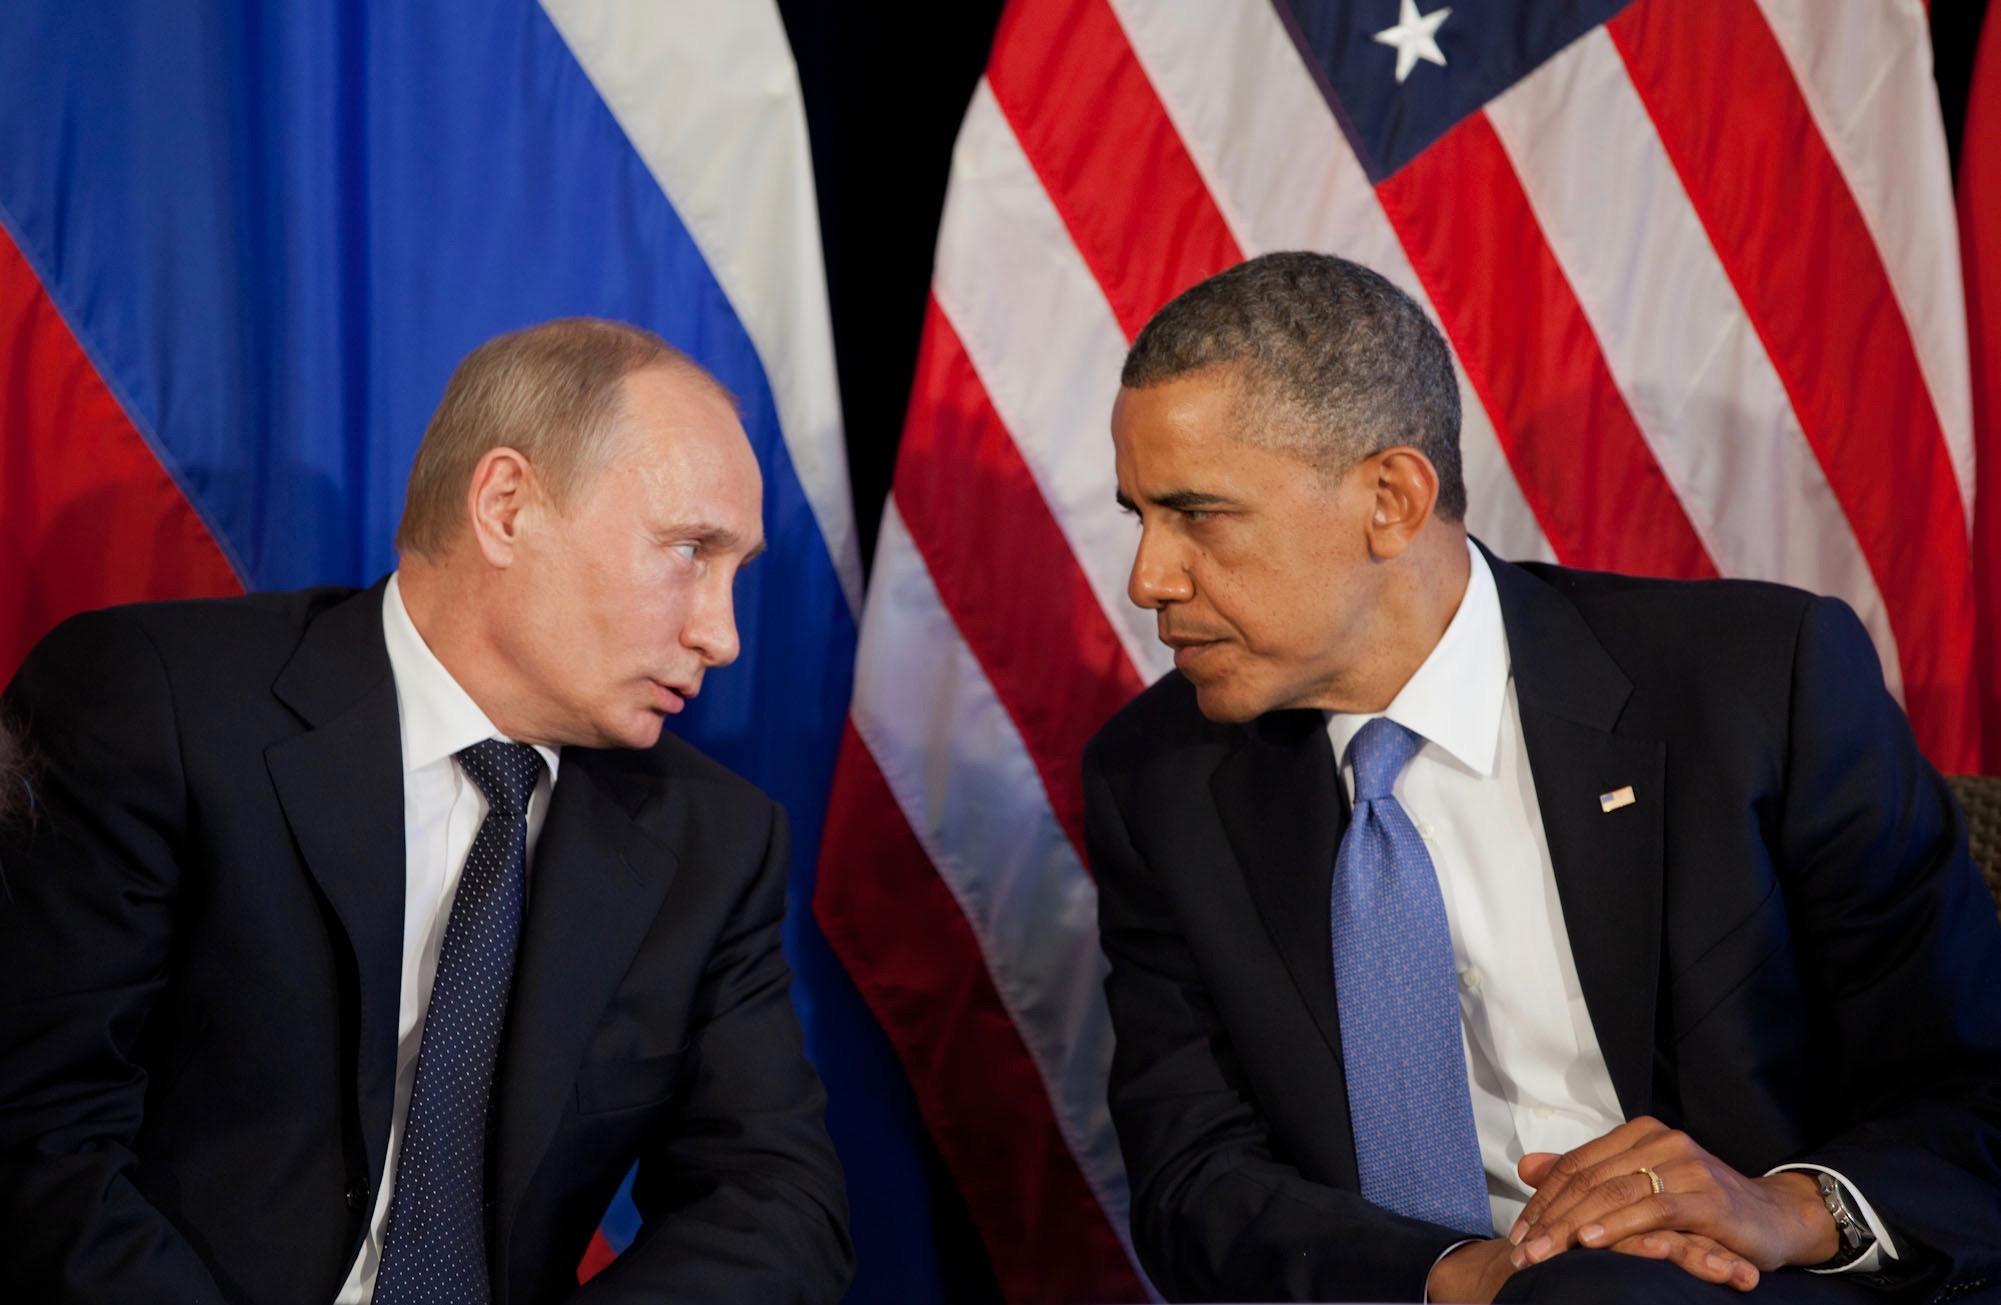 Vladimir Putin and Barak Obama at a bilateral meeting in 2012